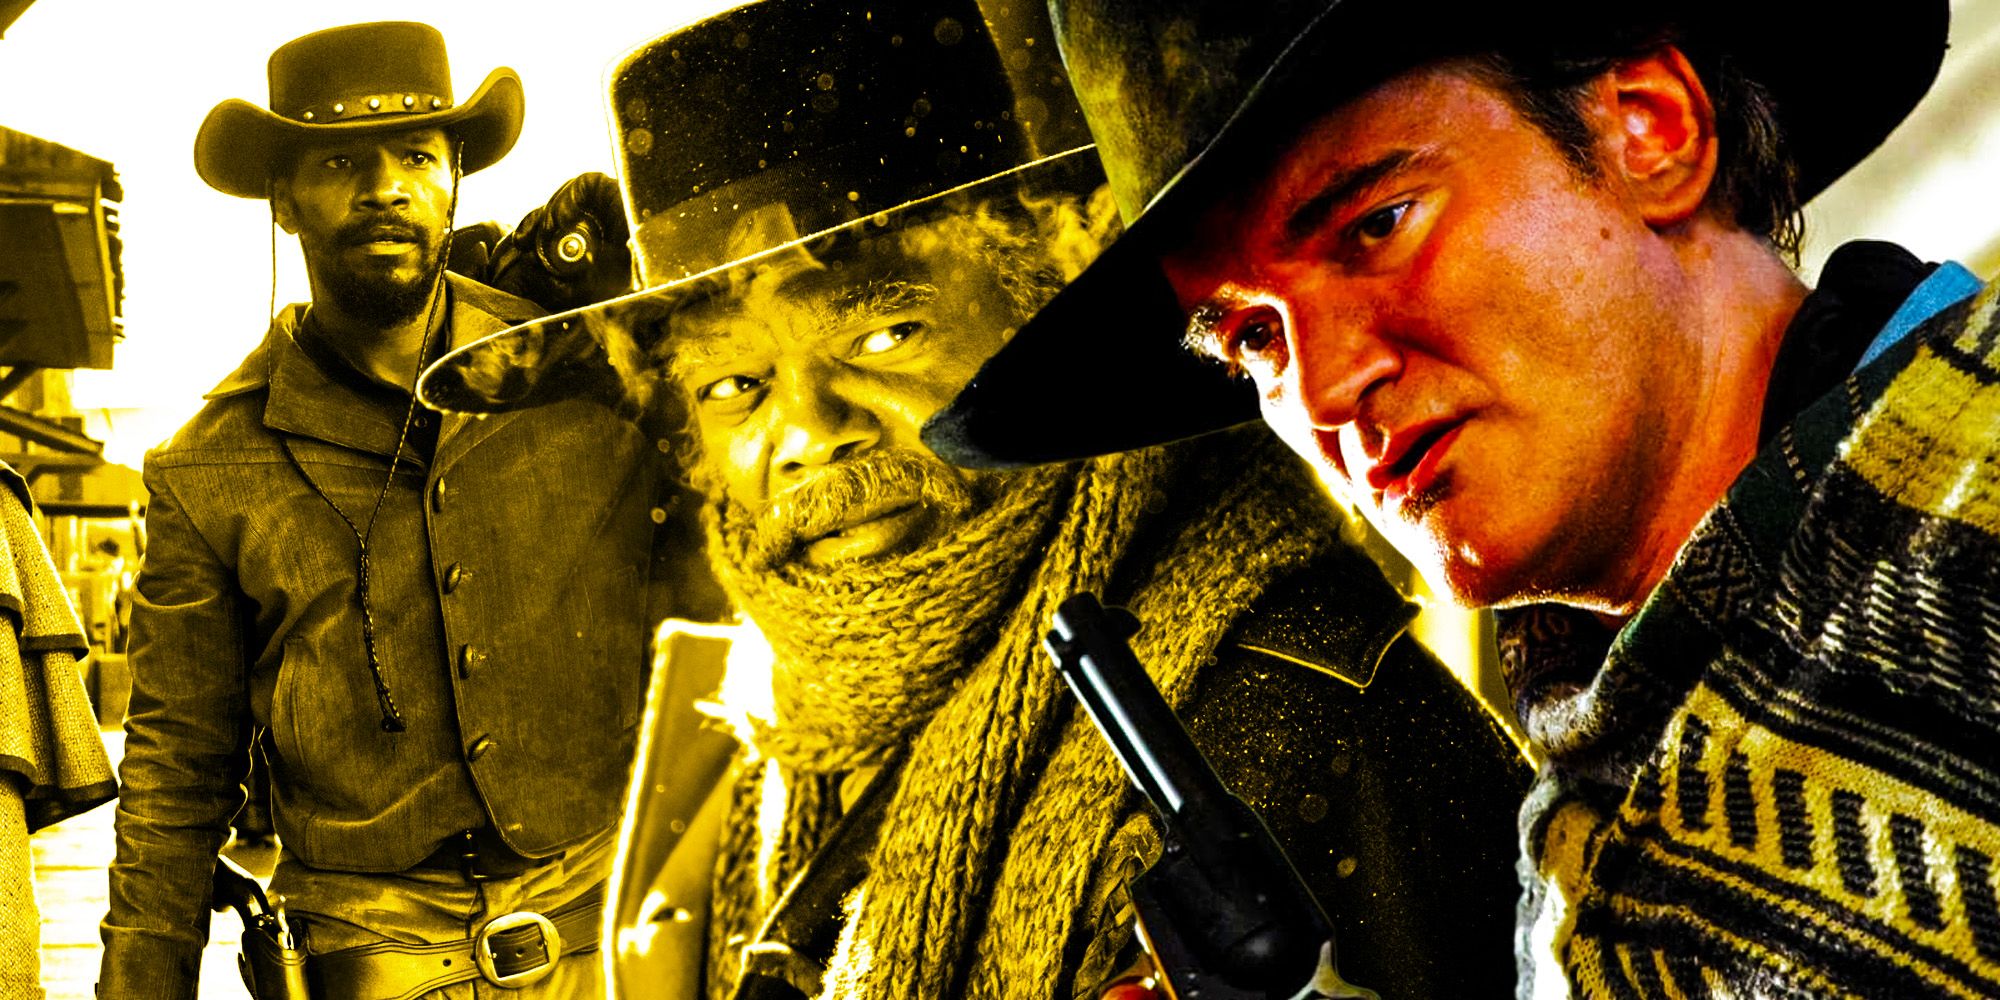 La próxima película de Tarantino debe ser un western (o romperá su propia regla)